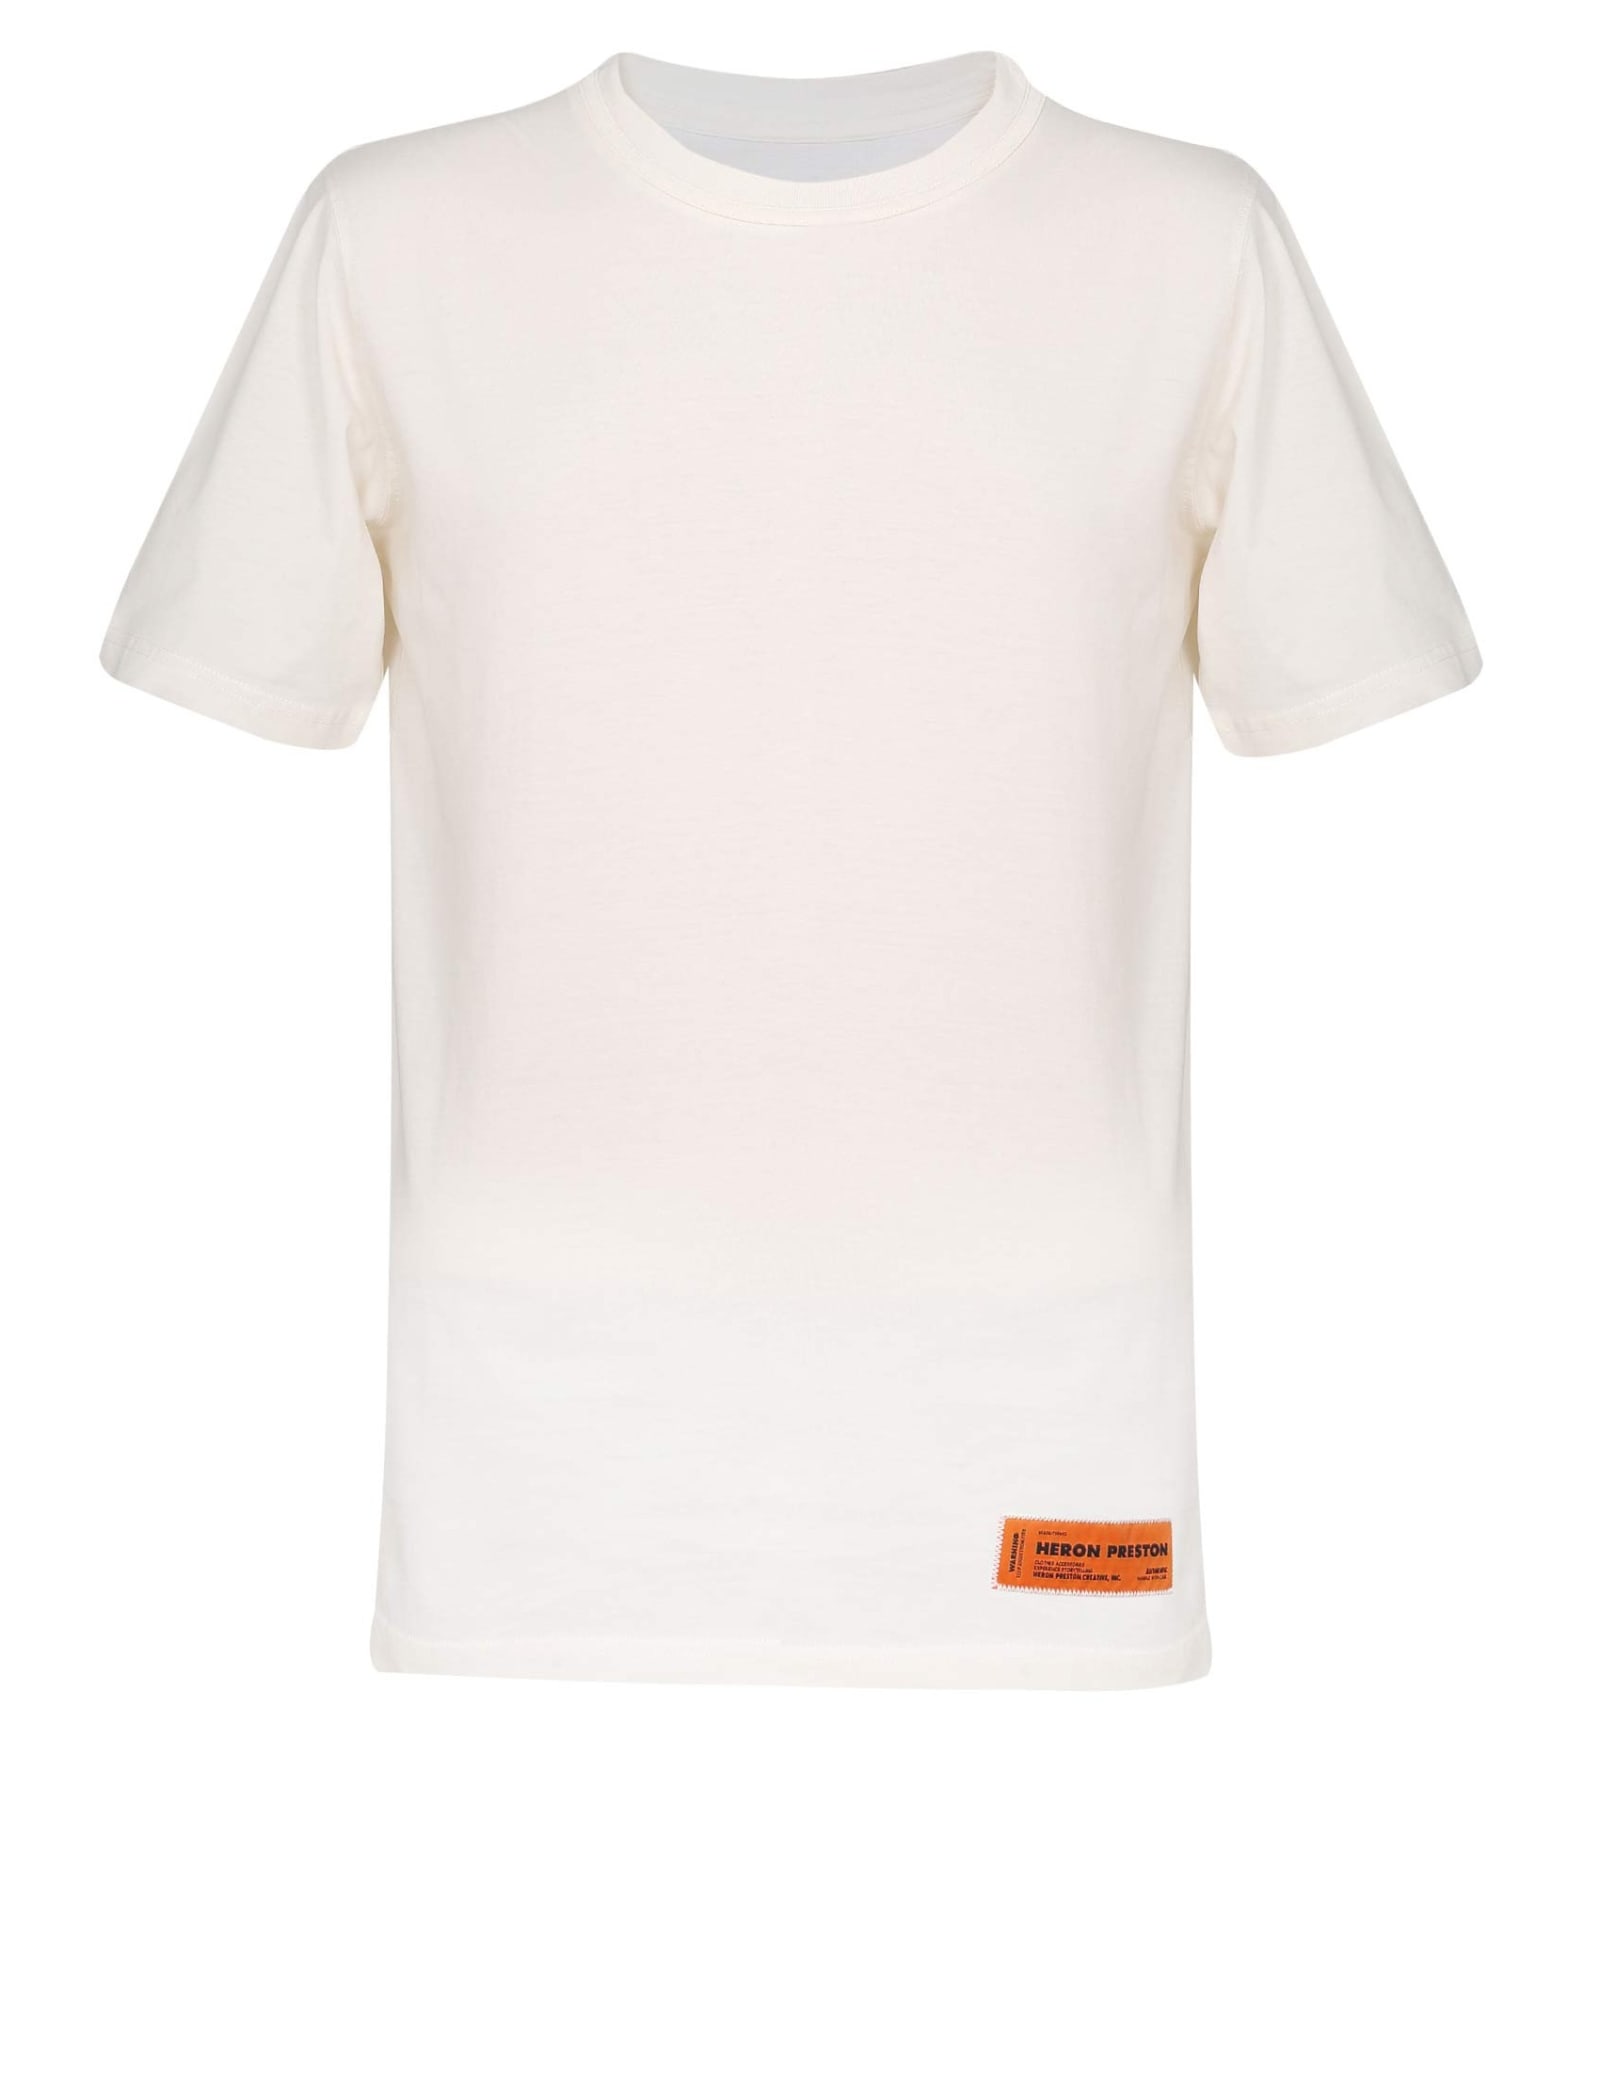 HERON PRESTON T-shirt In White Cotton